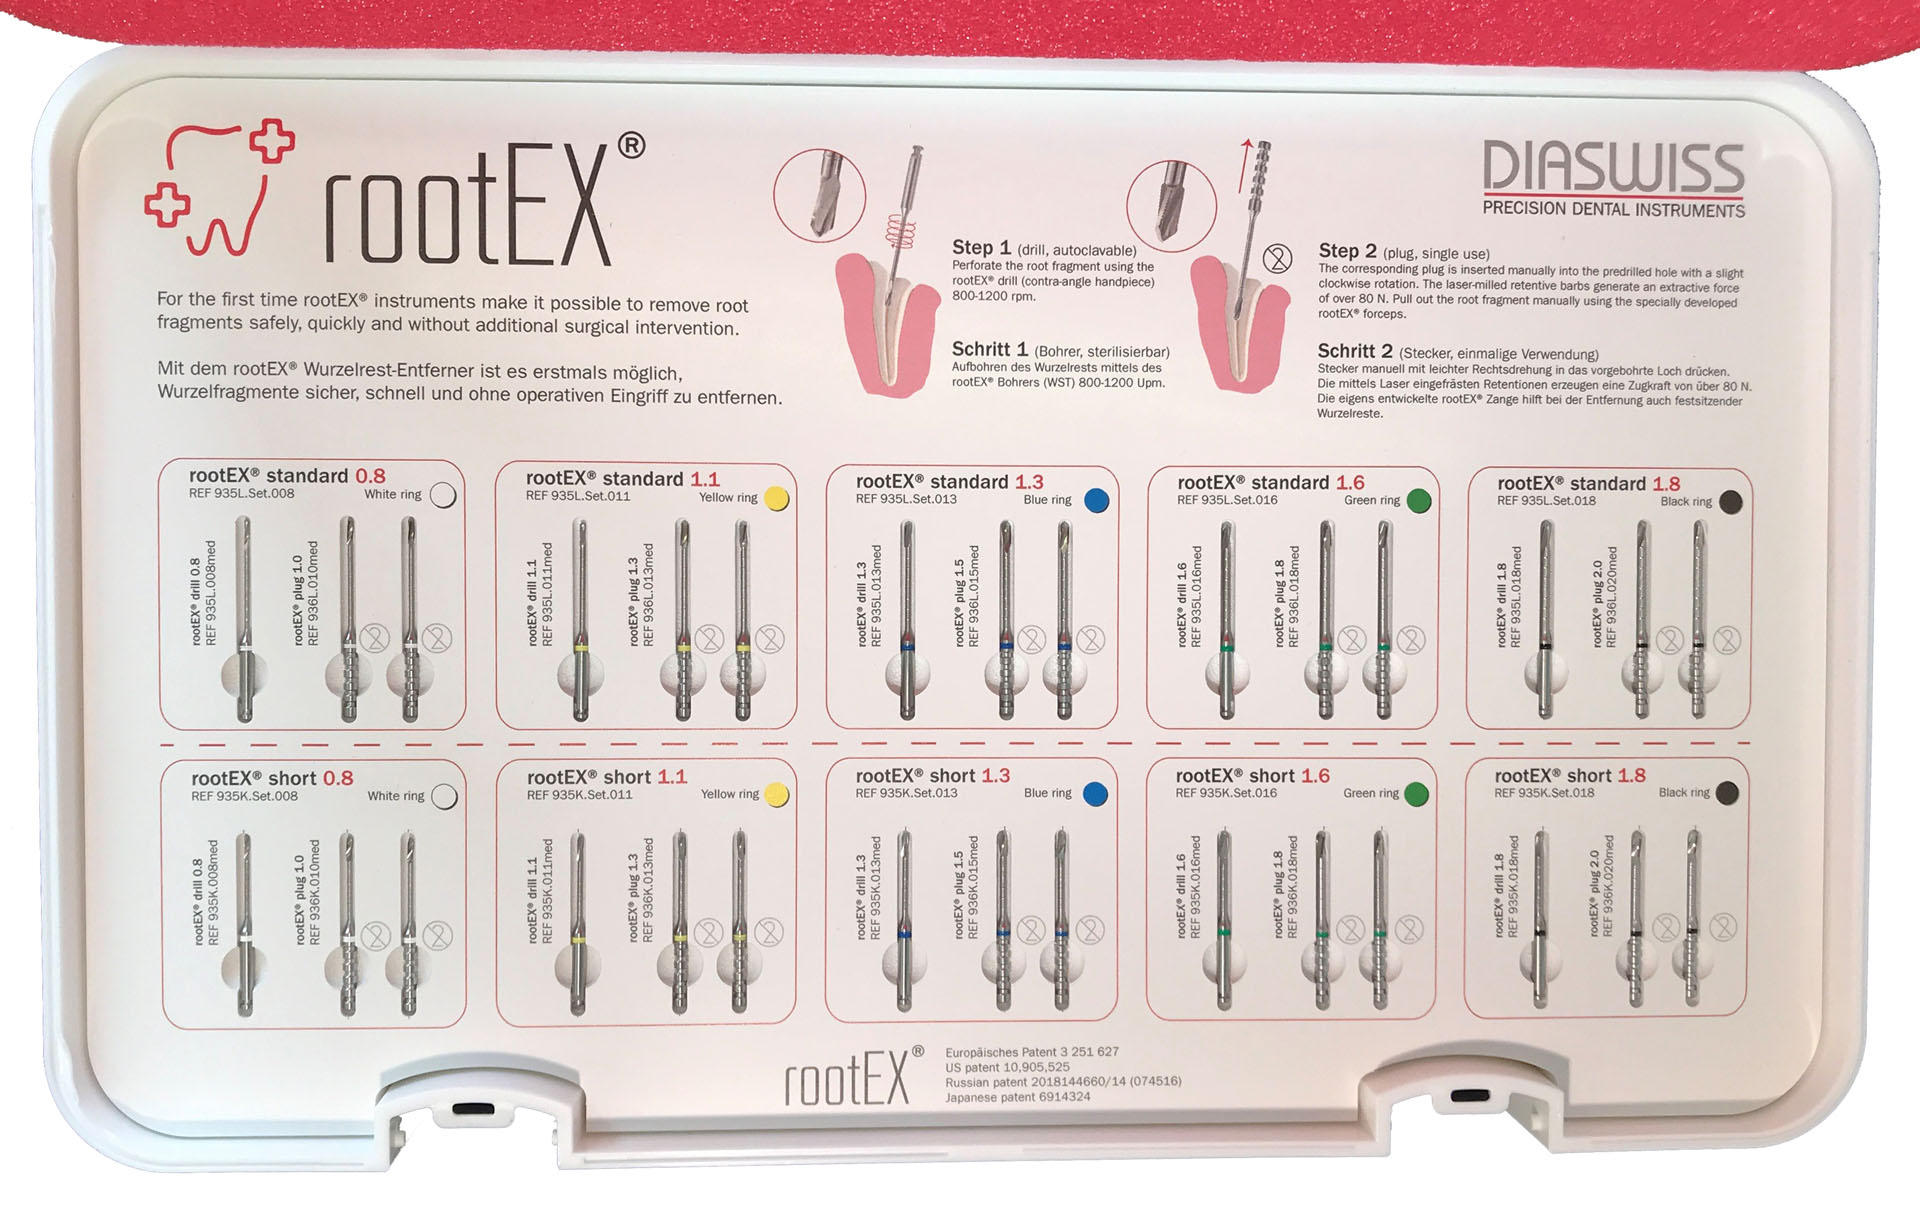 Root-Ex minimalinvasiver Wurzelentferner mit Harpunenstift entfernt Wurzelelemente oder abgebrochen Zahnrückstände aus der Alveole ohne Chirurgie